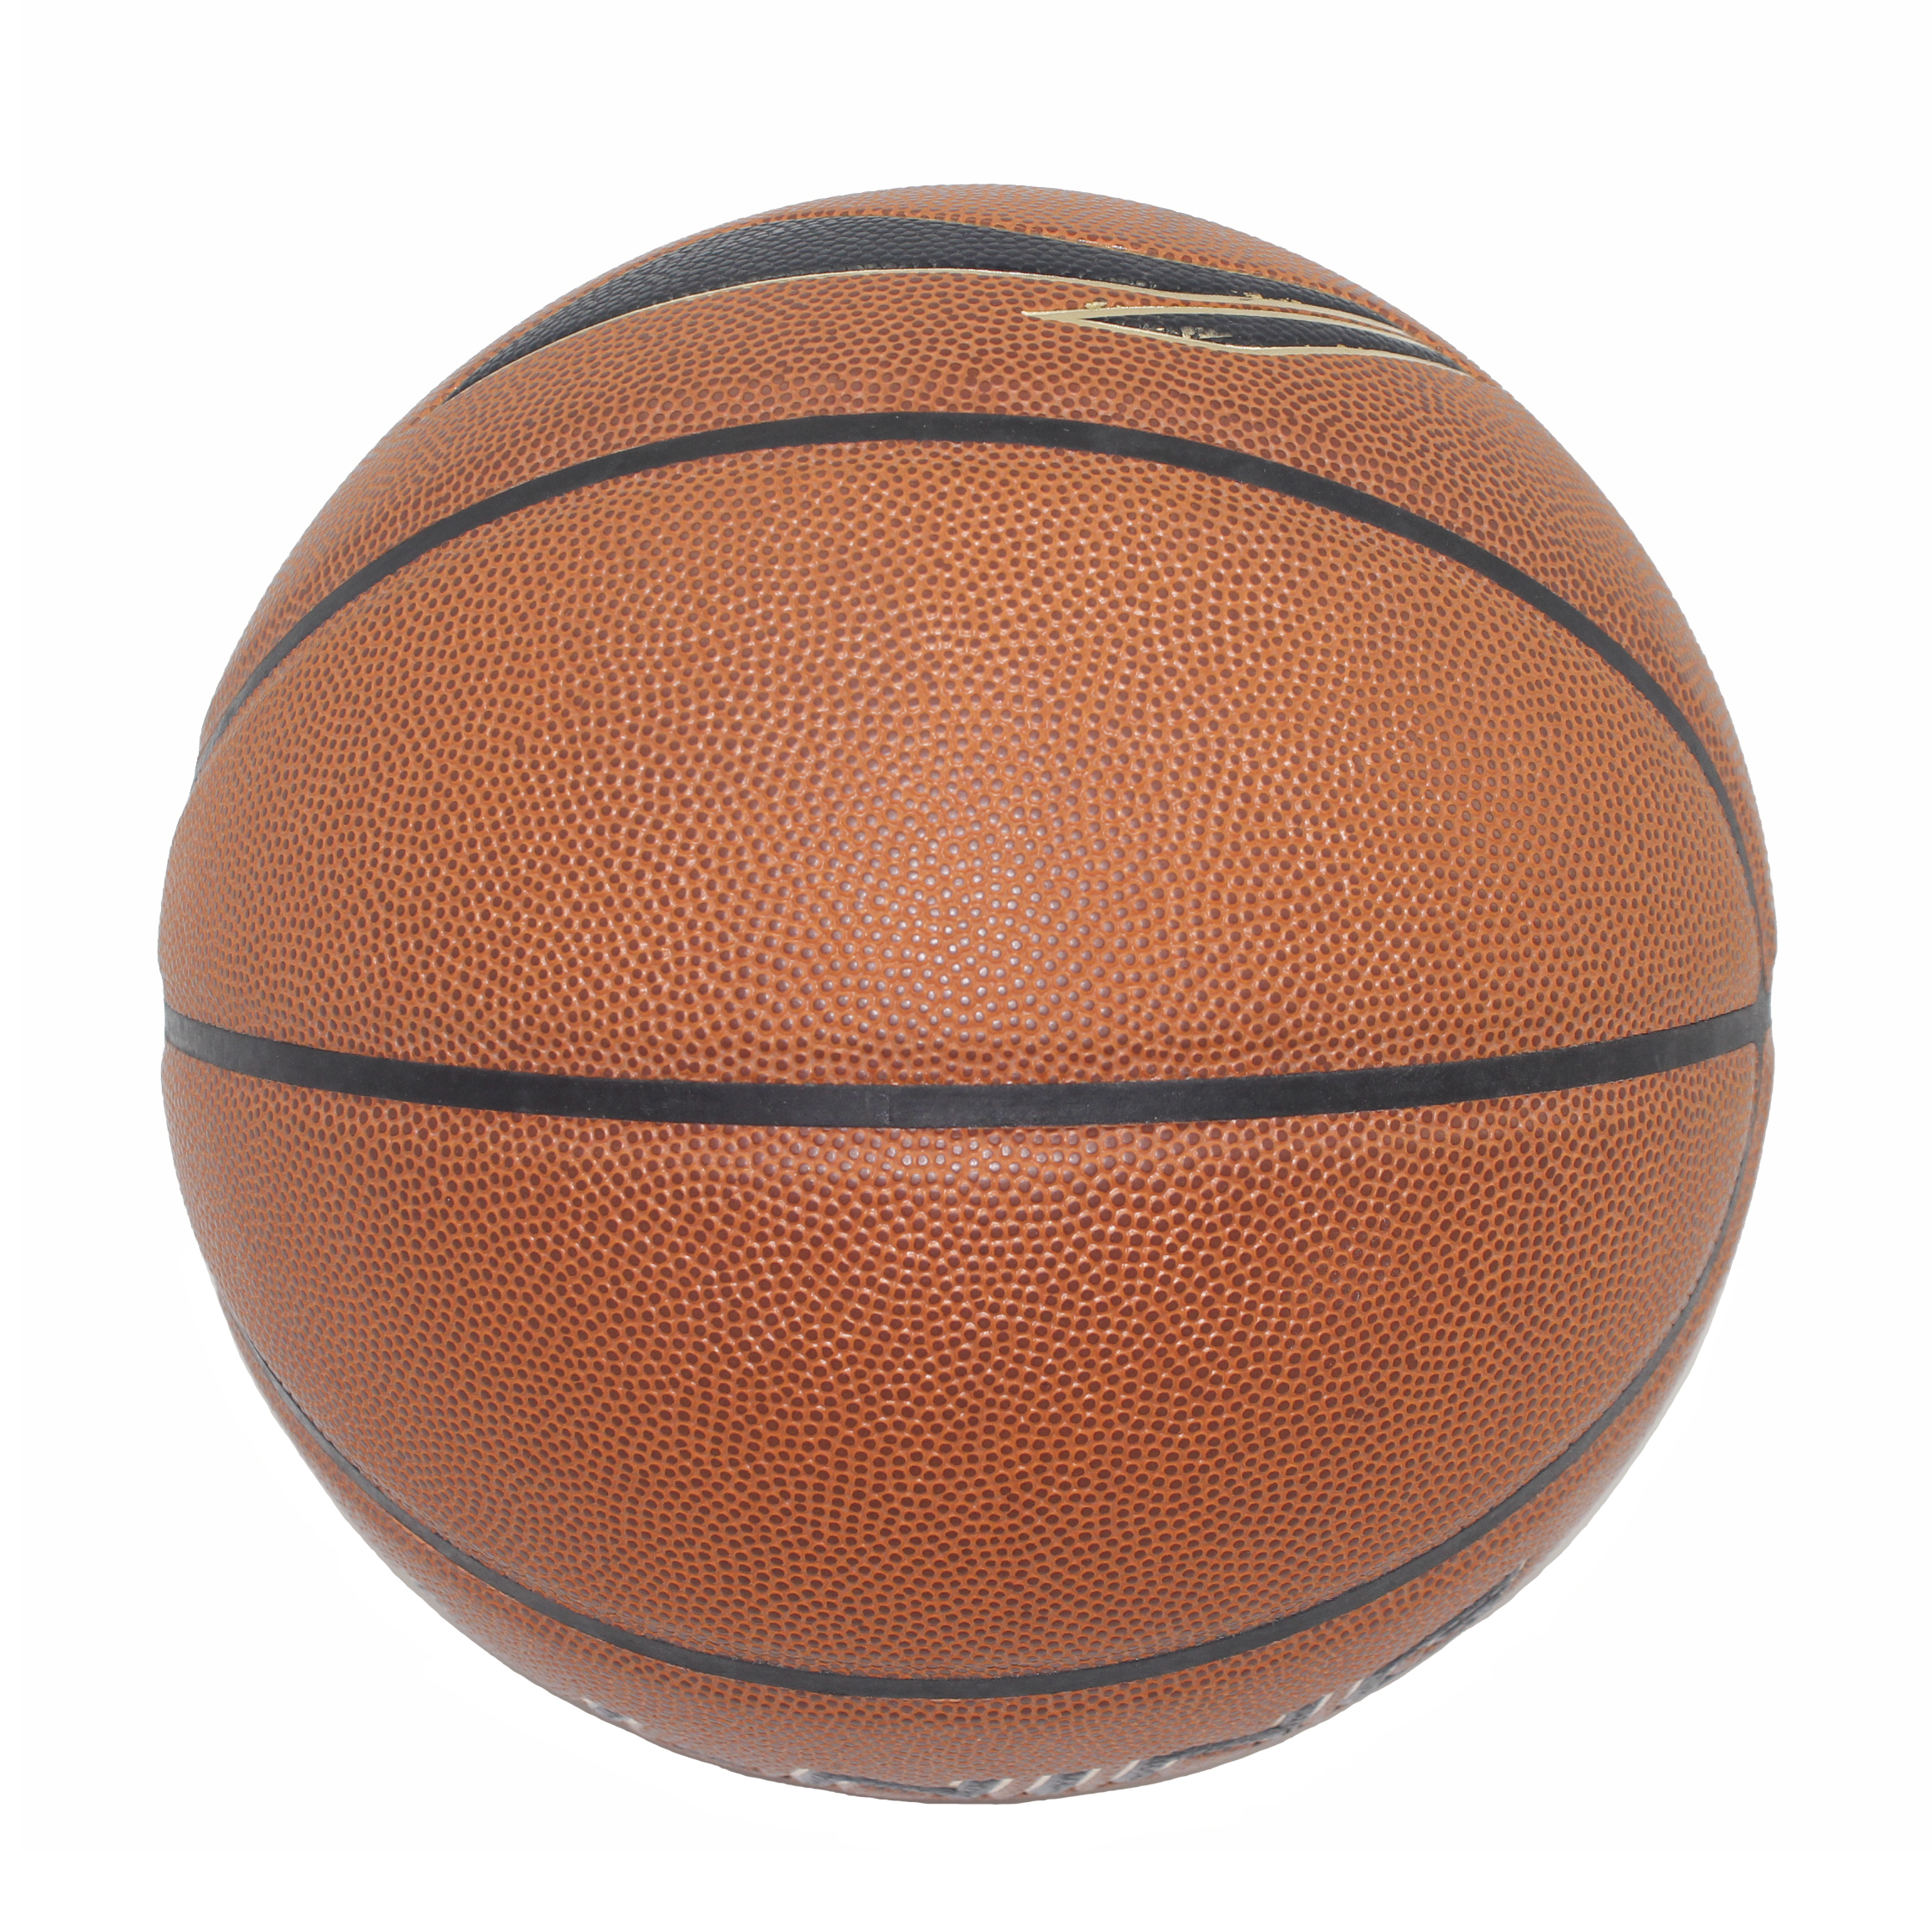 جودة عالية في الهواء الطلق مخصصة المطاط والجلود بو الجلد الحجم 5 6 7 كرة السلة